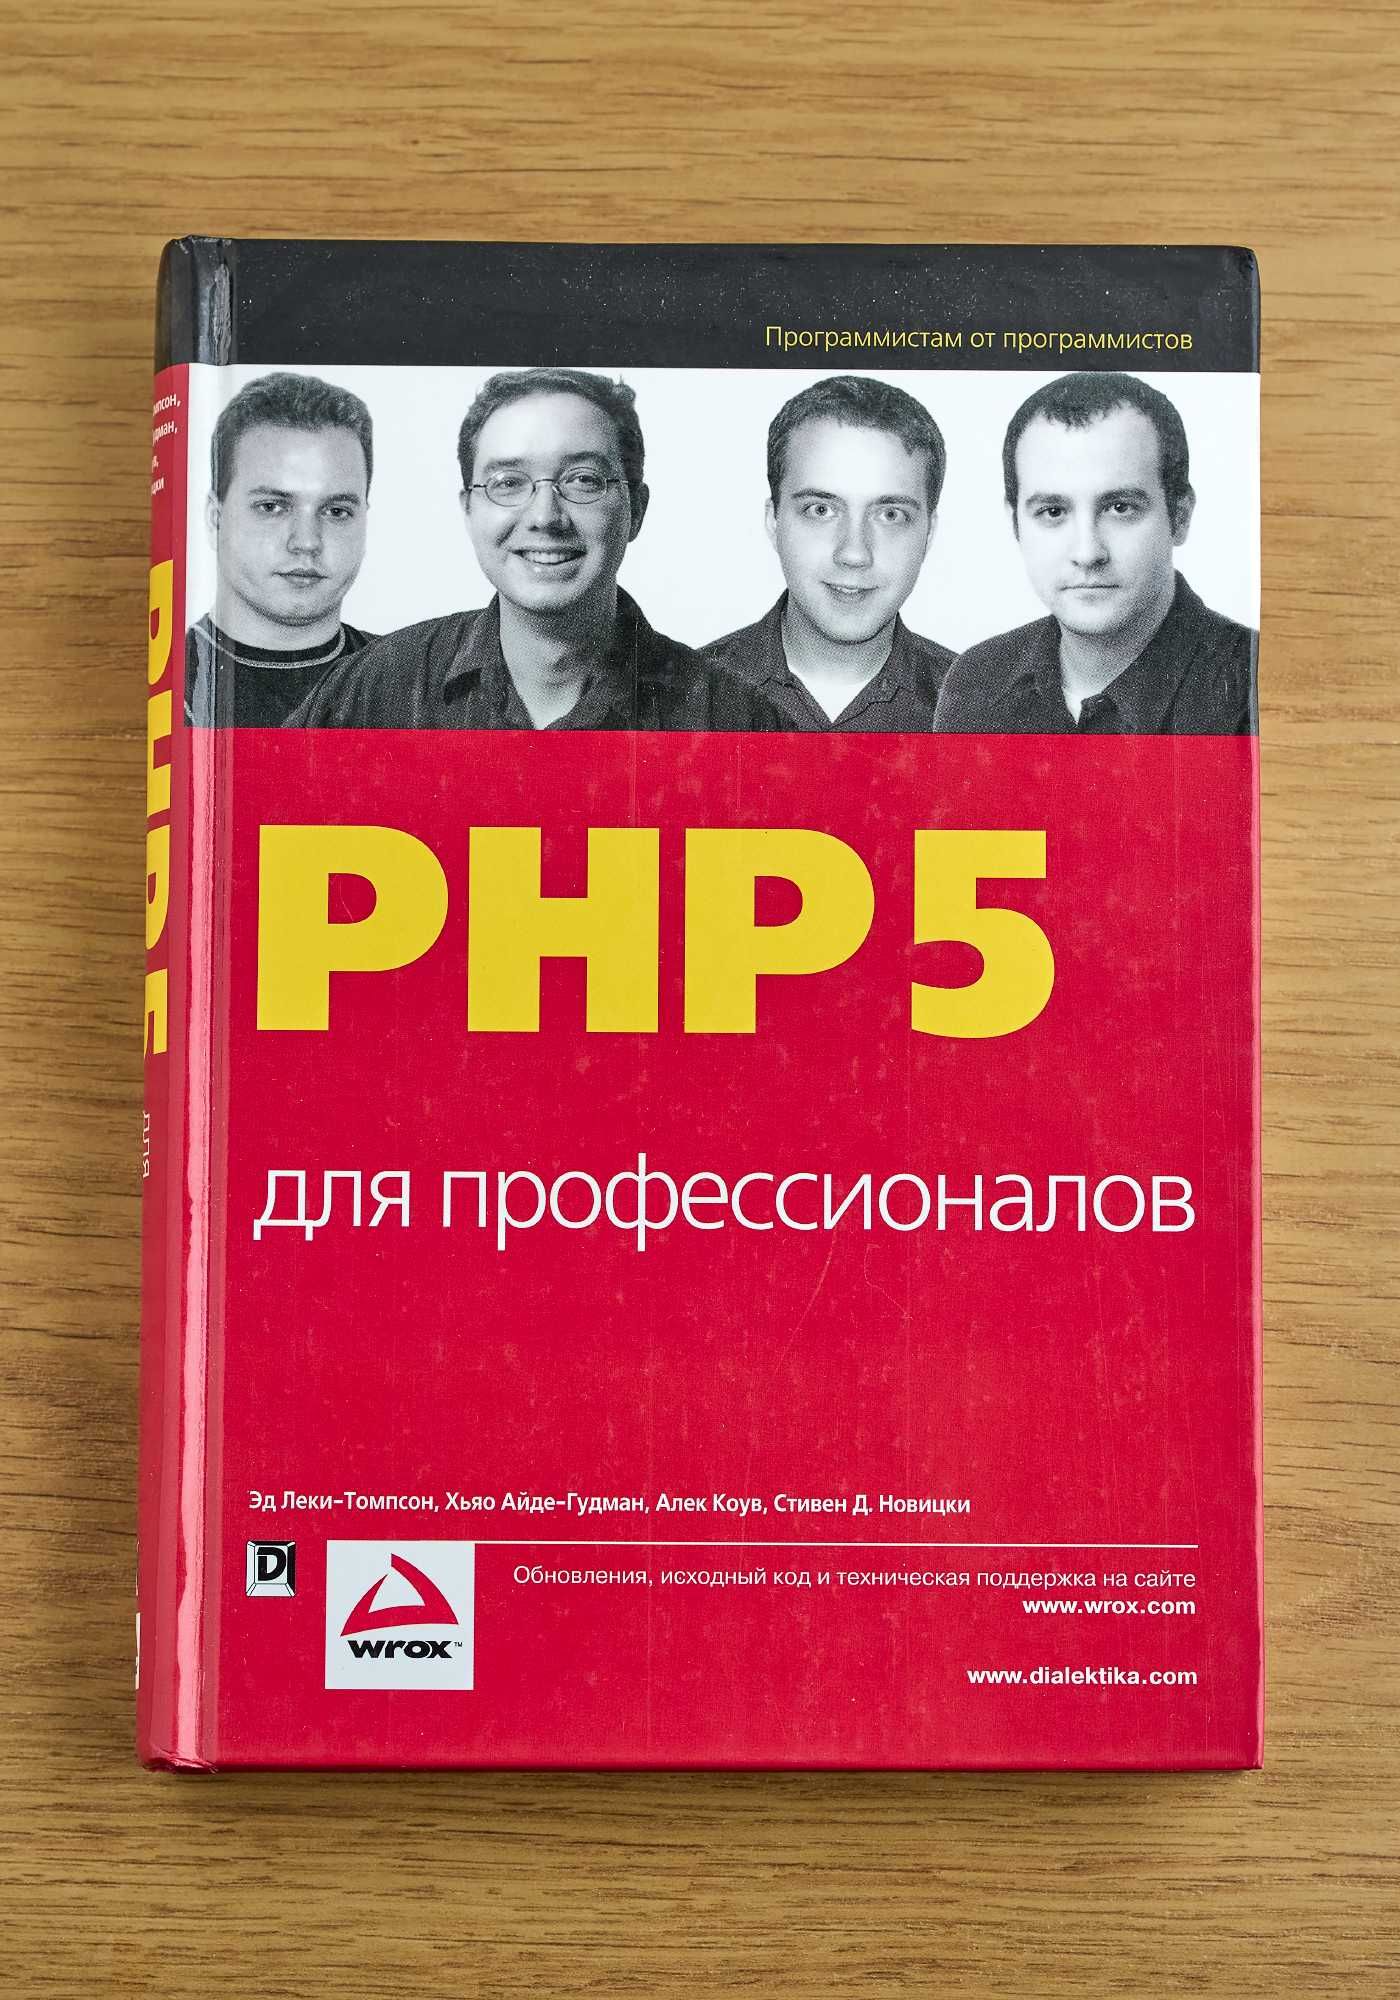 Книга "PHP 5 для профессионалов."